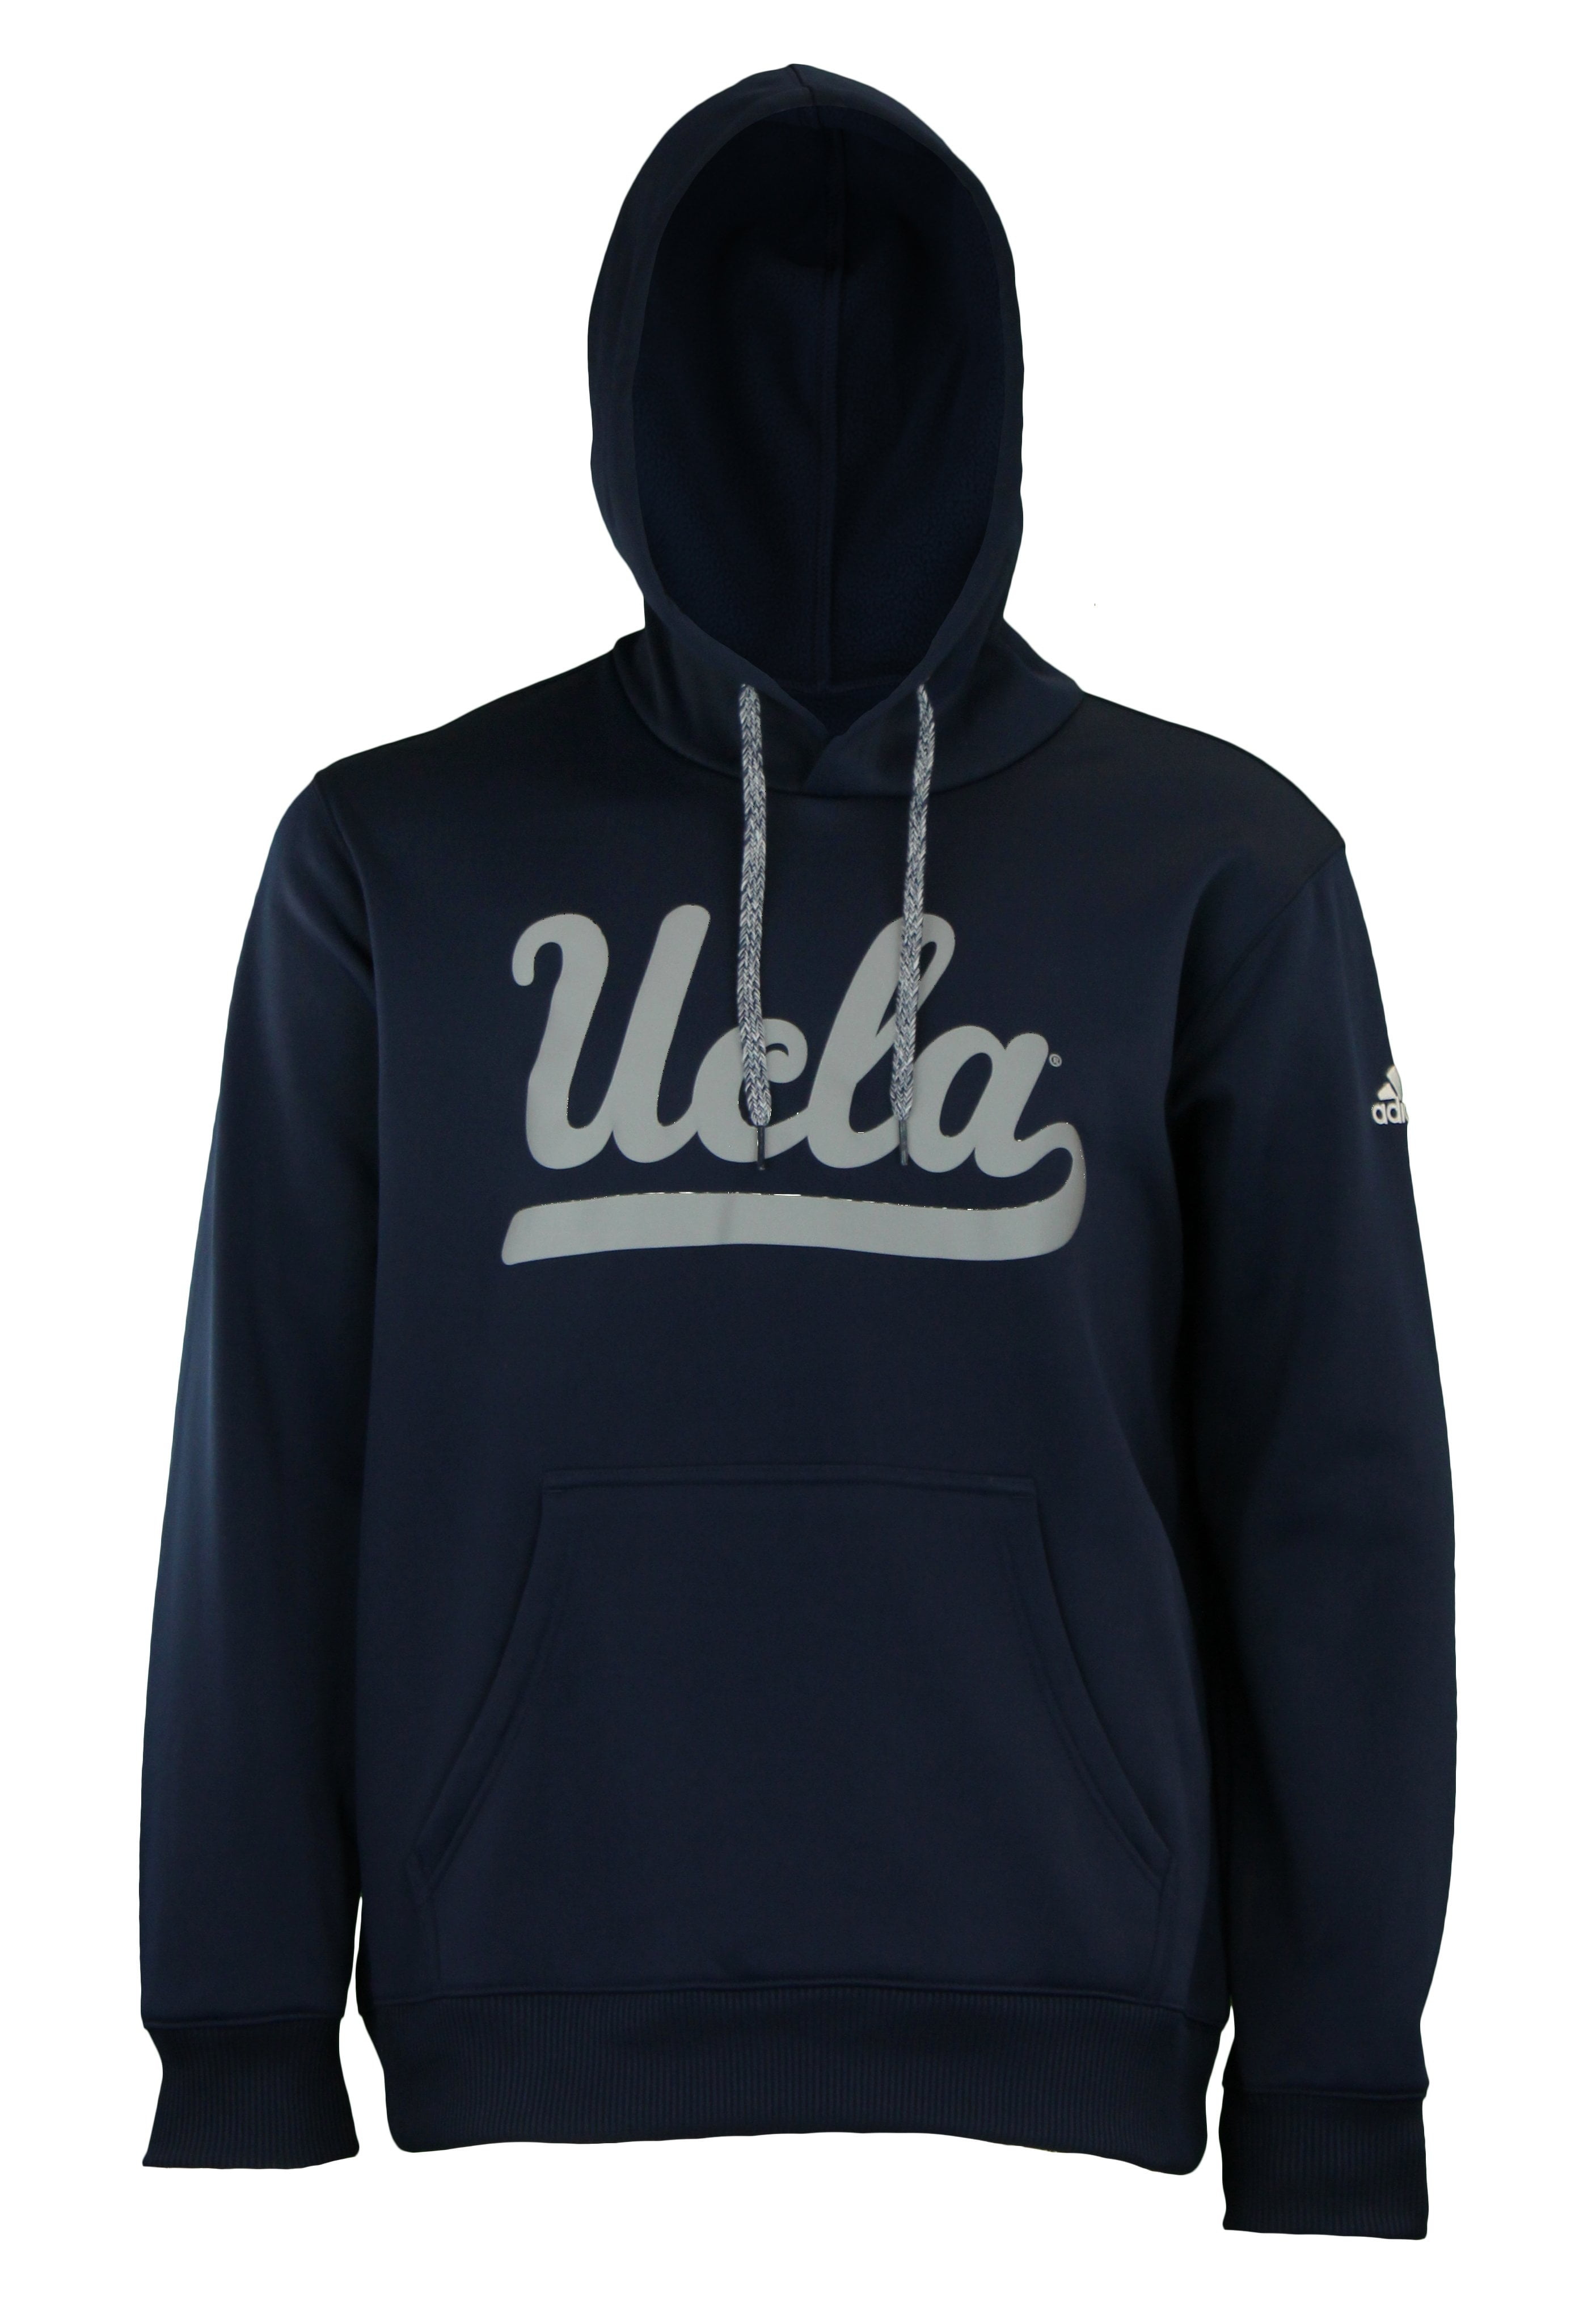 ucla hoodie adidas